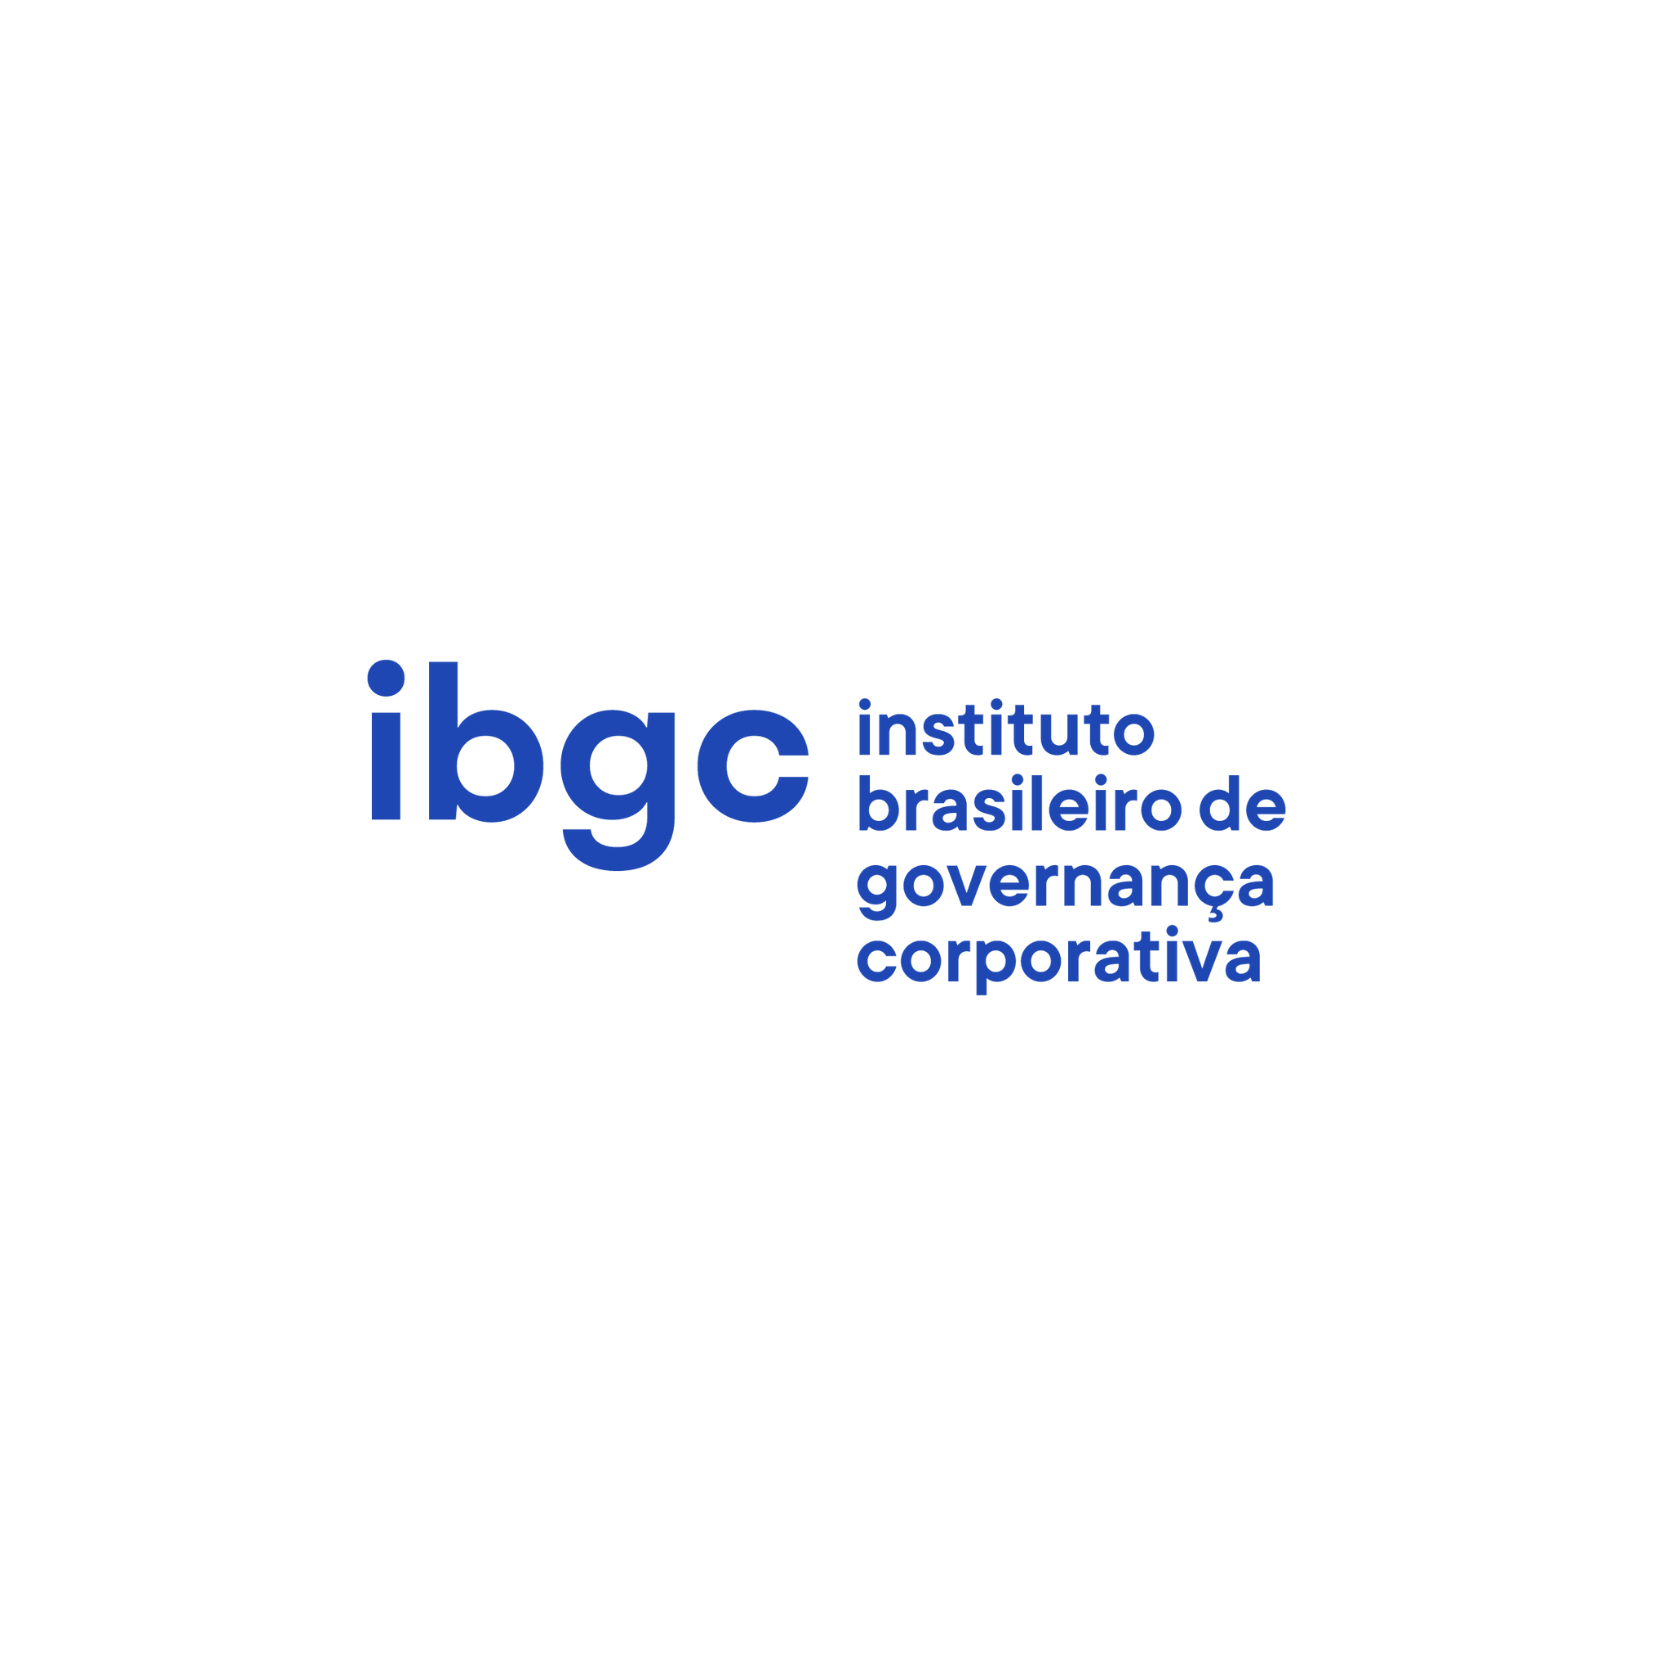 IBGC